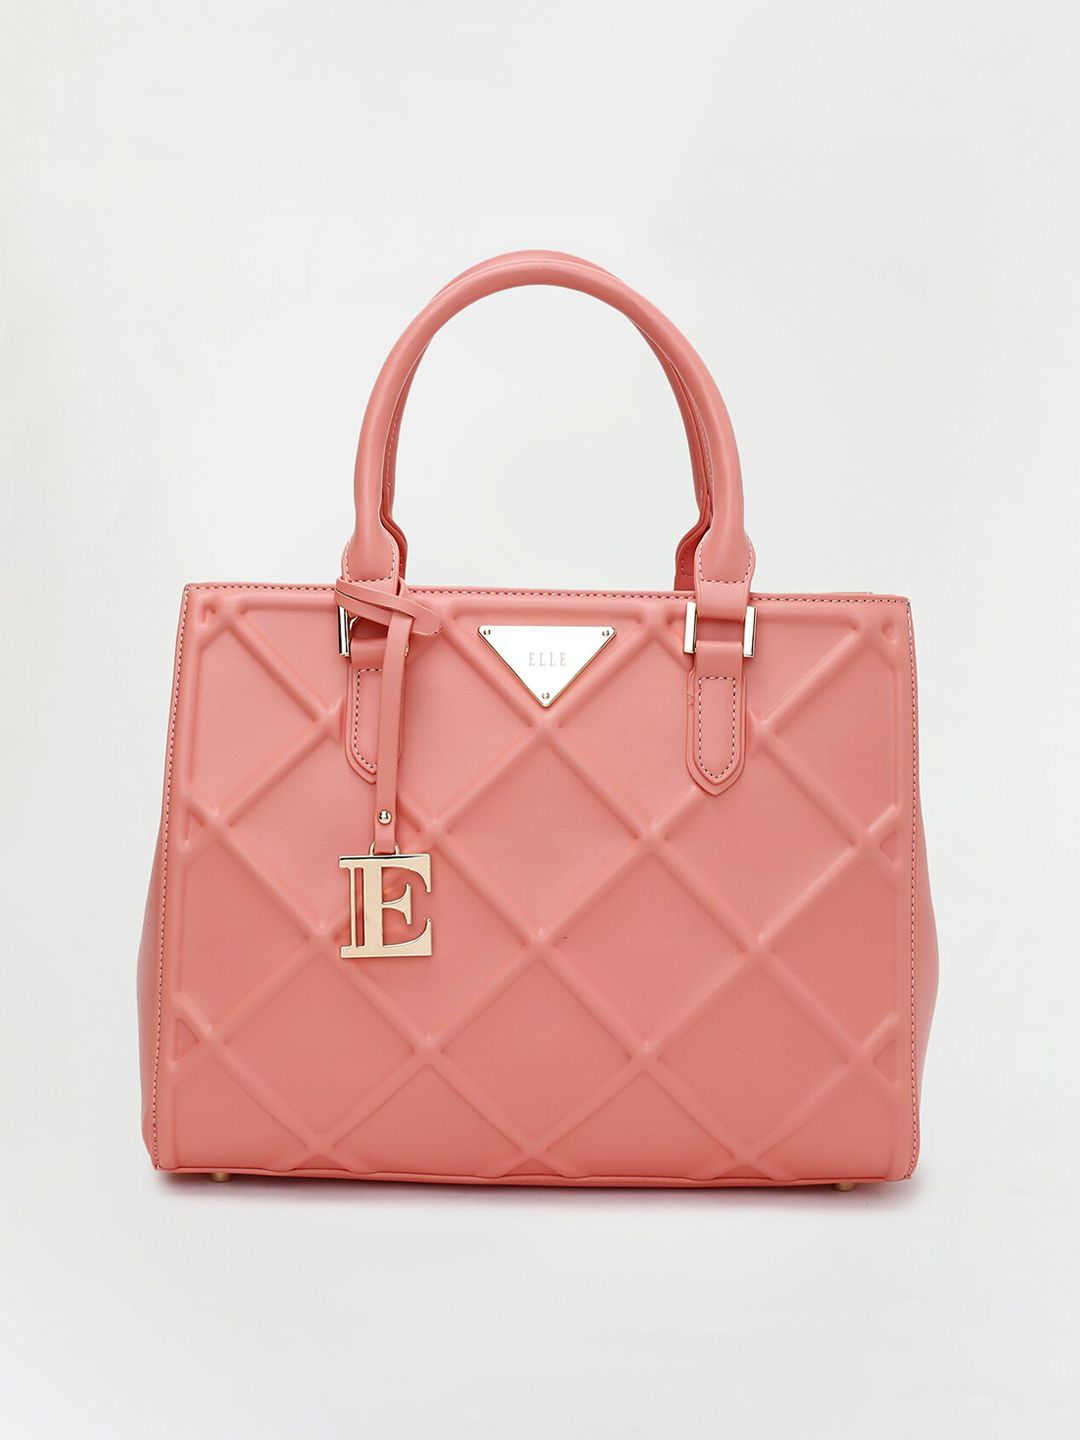 Buy Elle ELLE Pink Textured Swagger Handheld Bag at Redfynd